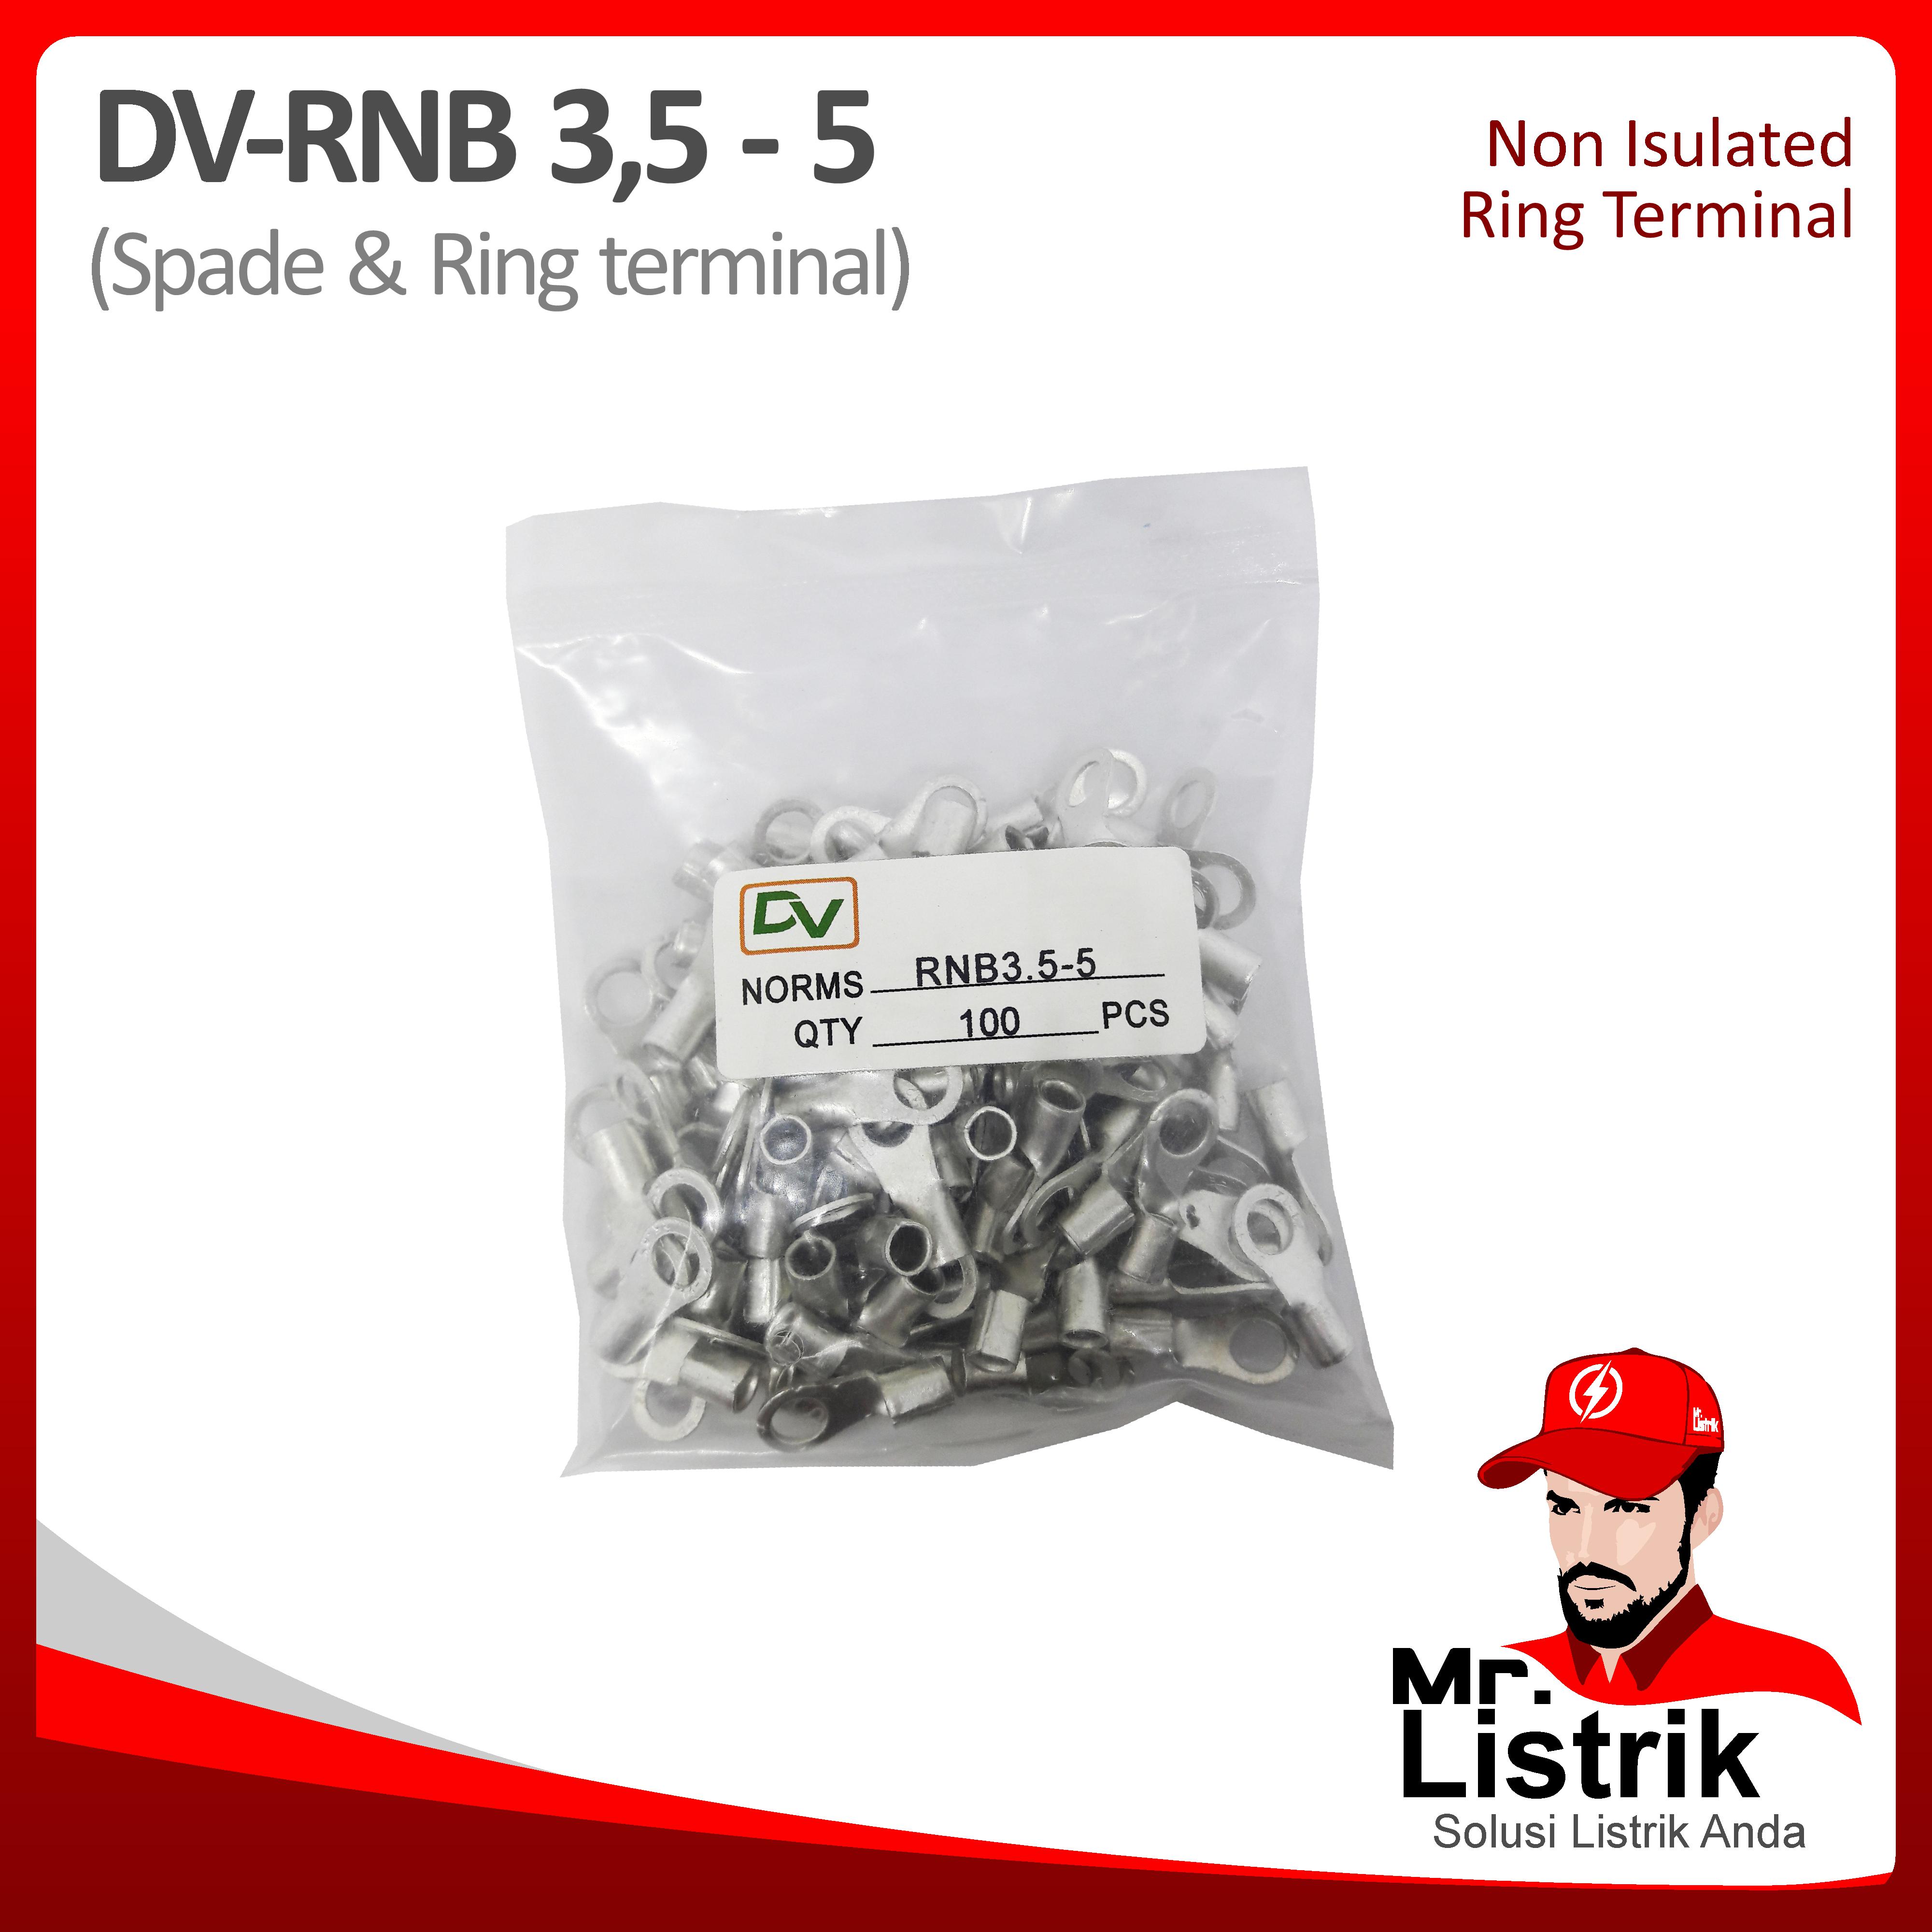 Non Insulated Skun Ring 2.5-4mm DV RNB3.5-5